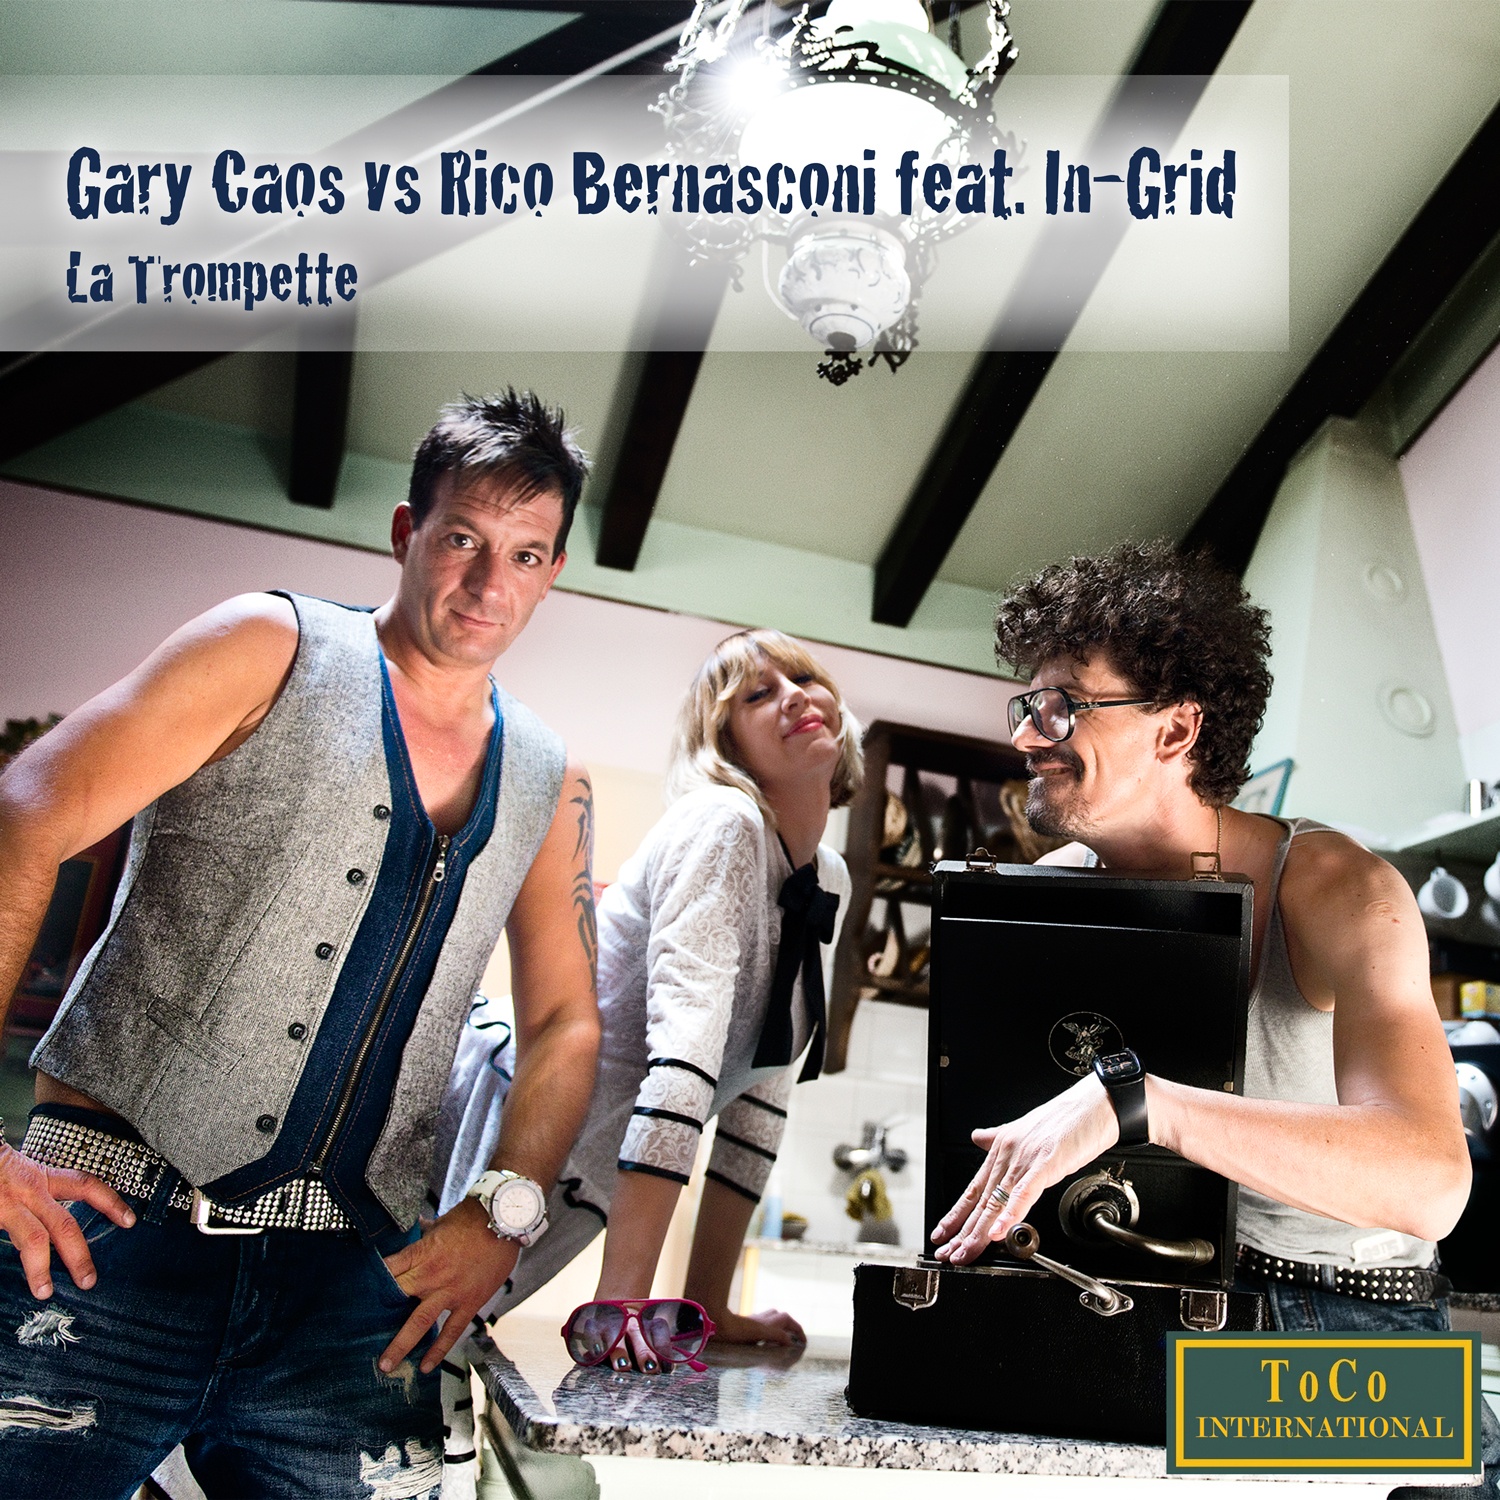 La Trompette (Bernasconi Radio Edit)